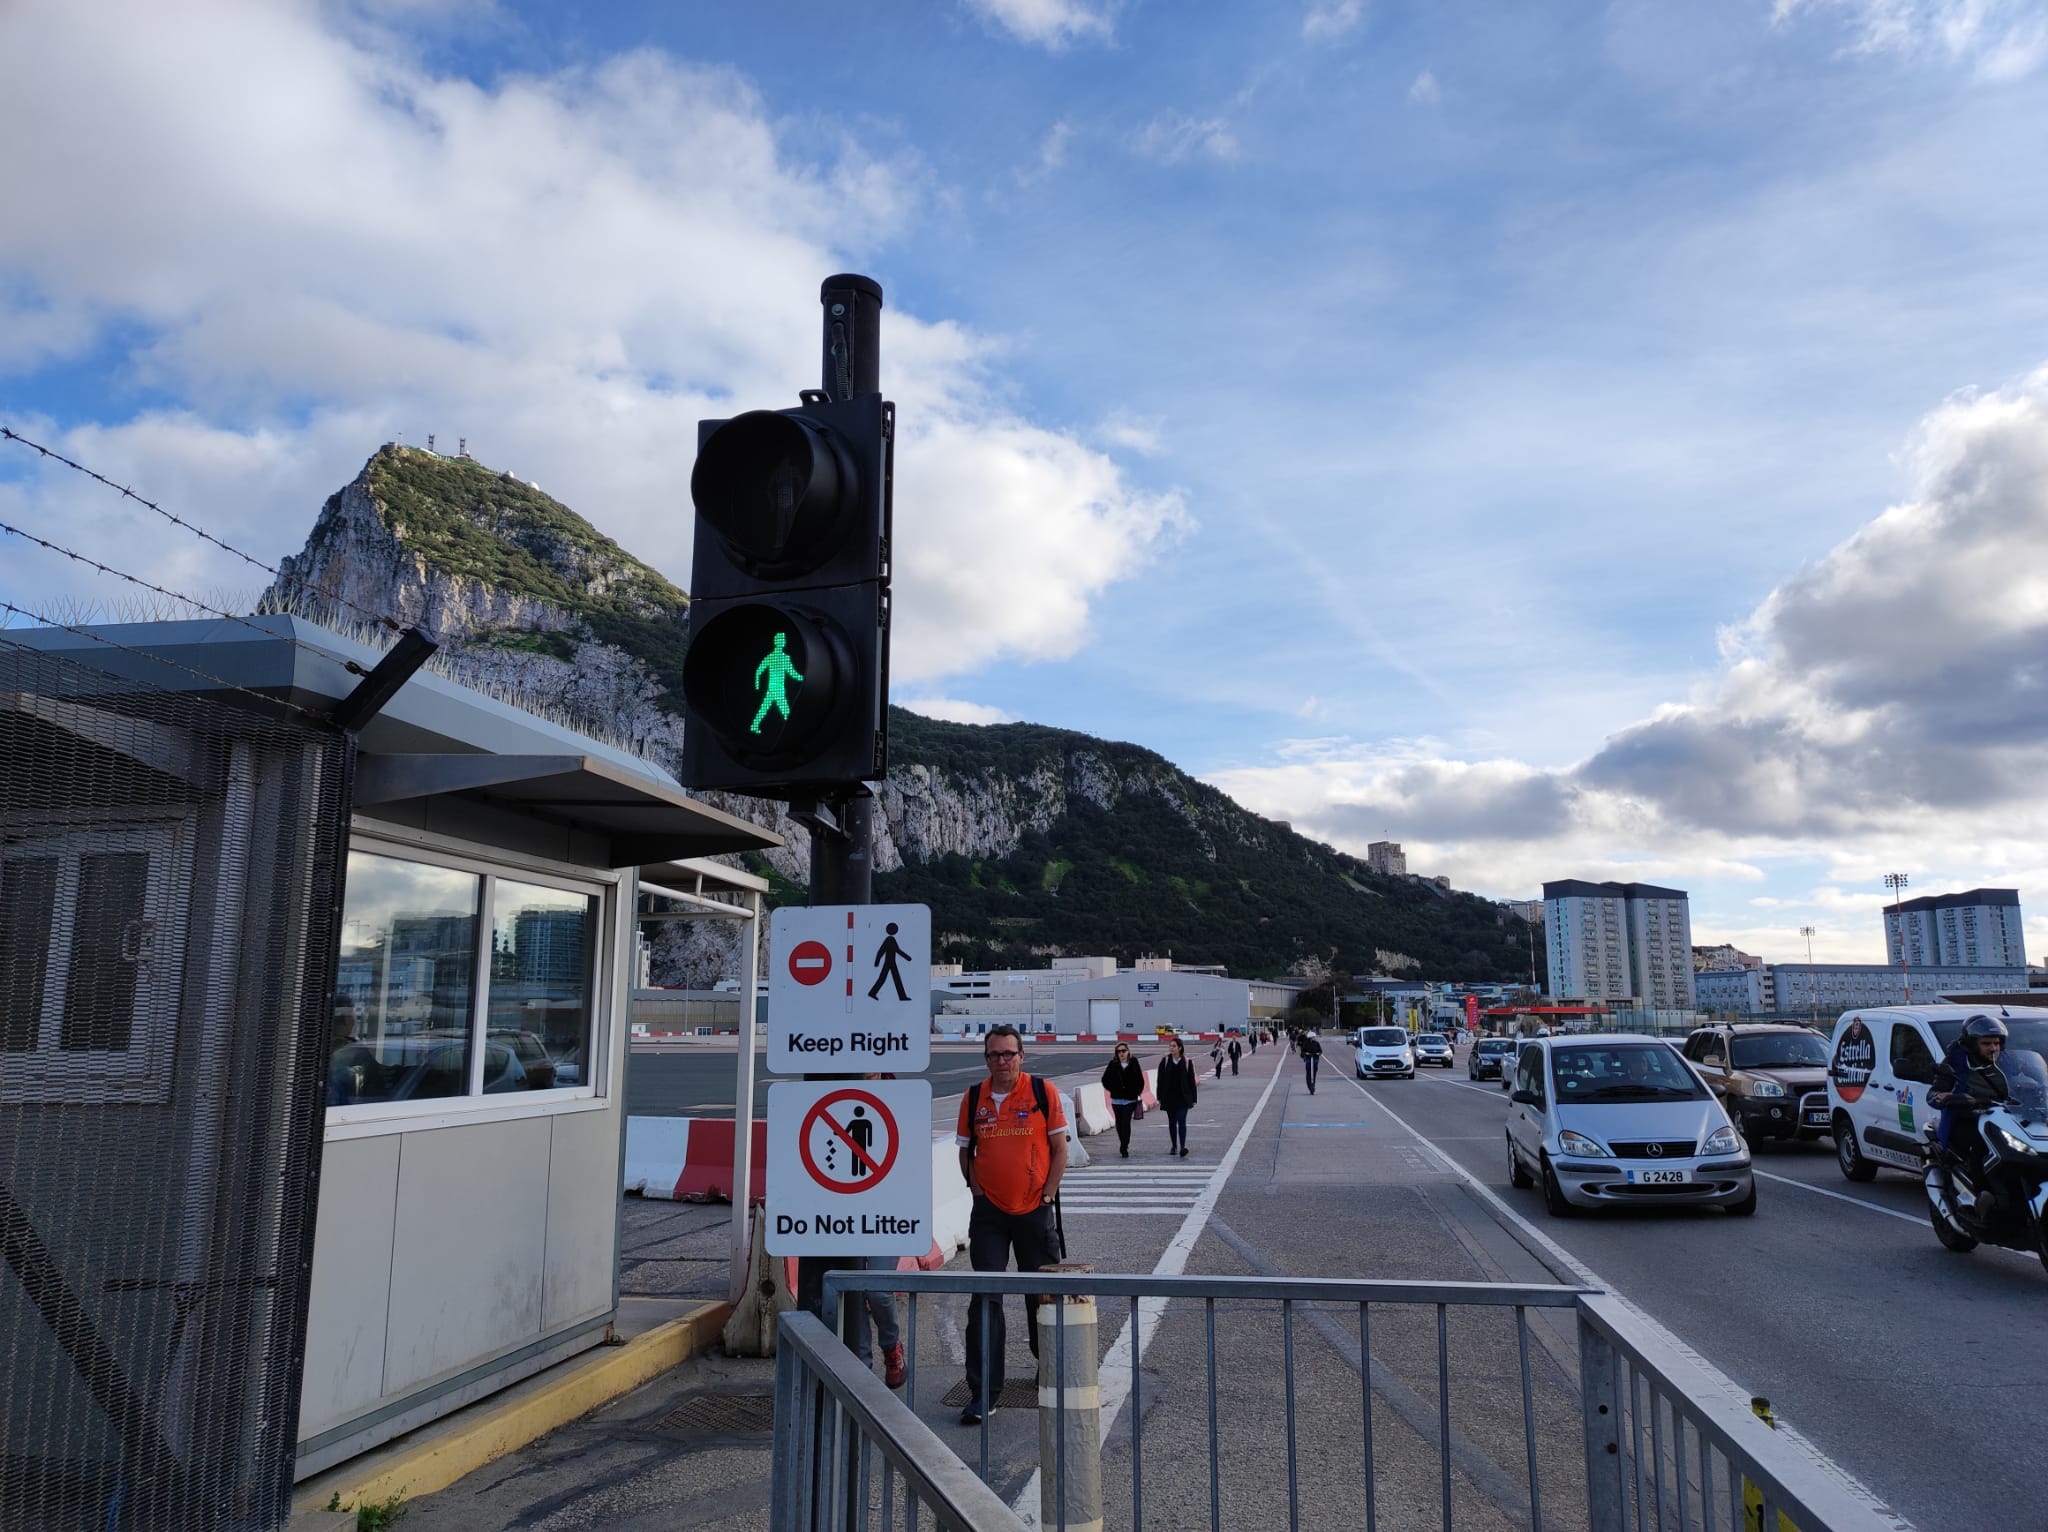  La Comisión Europea ve la negociación sobre Gibraltar en "pleno apogeo". Foto: Paso del aeropuerto de Gibraltar. S.D.